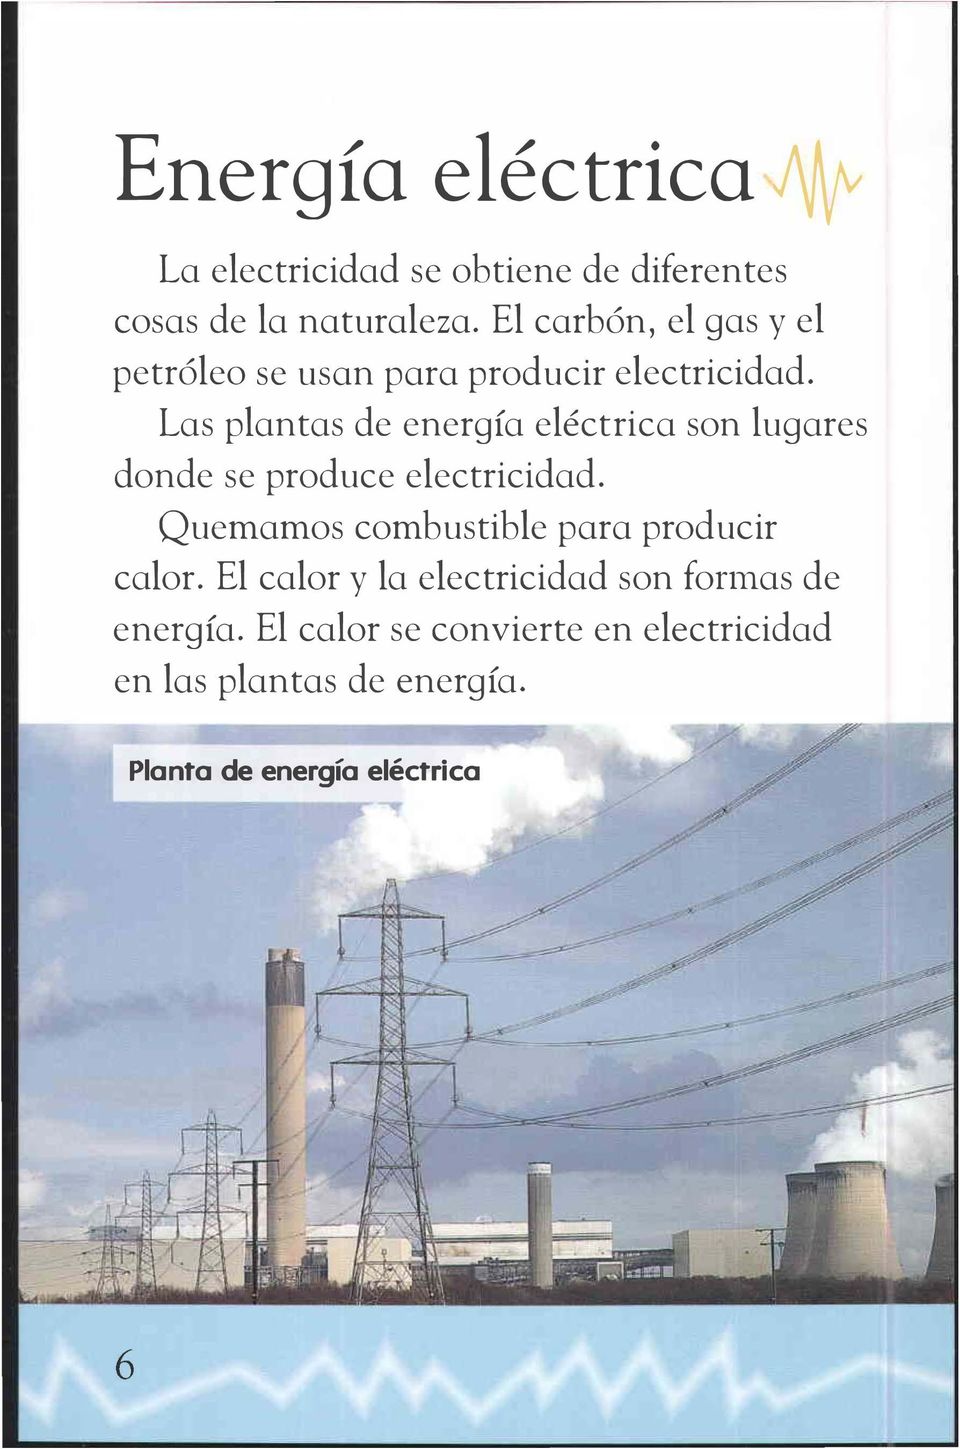 Las plantas de energía eléctrica son lugares donde se produce electricidad.